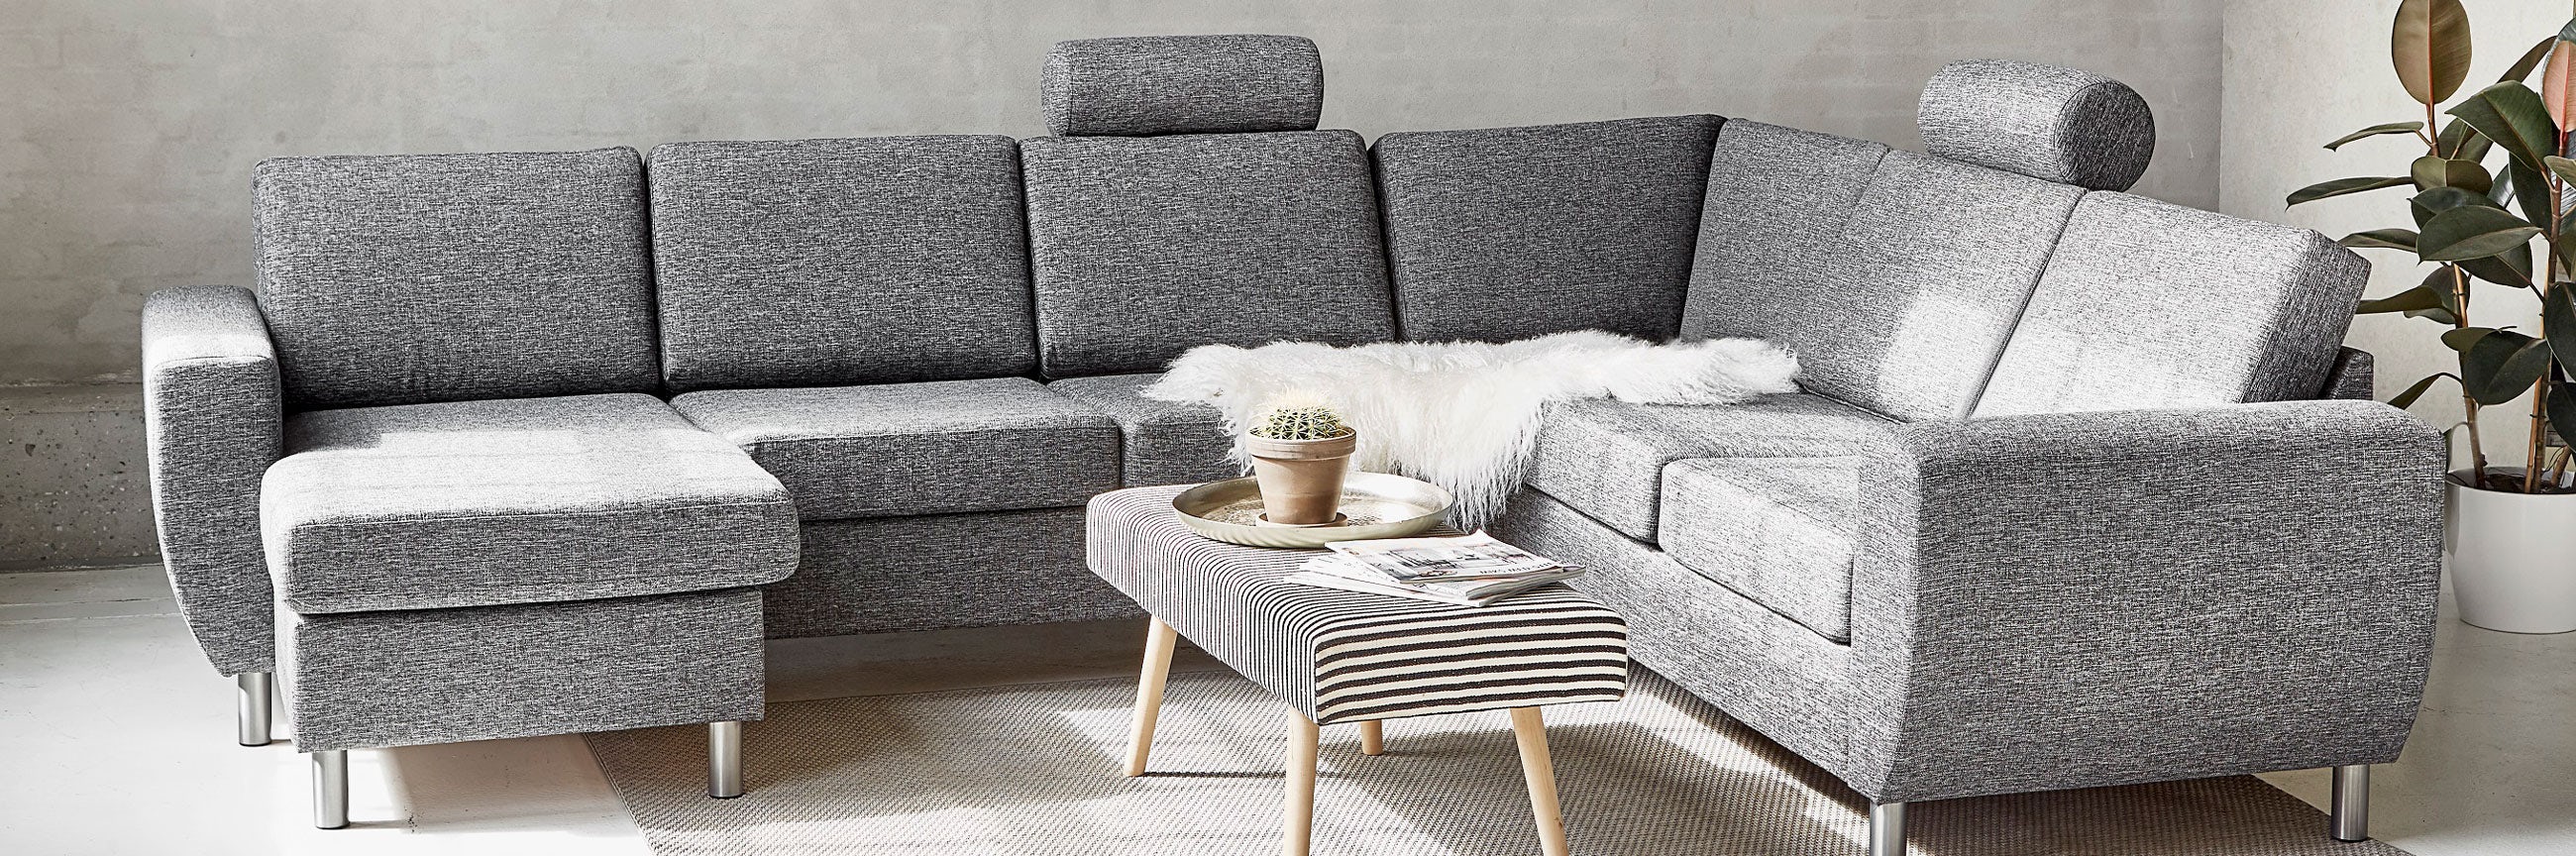 teori seng eksplosion Hvordan renser man en sofa? | Find svaret her | føtex.dk